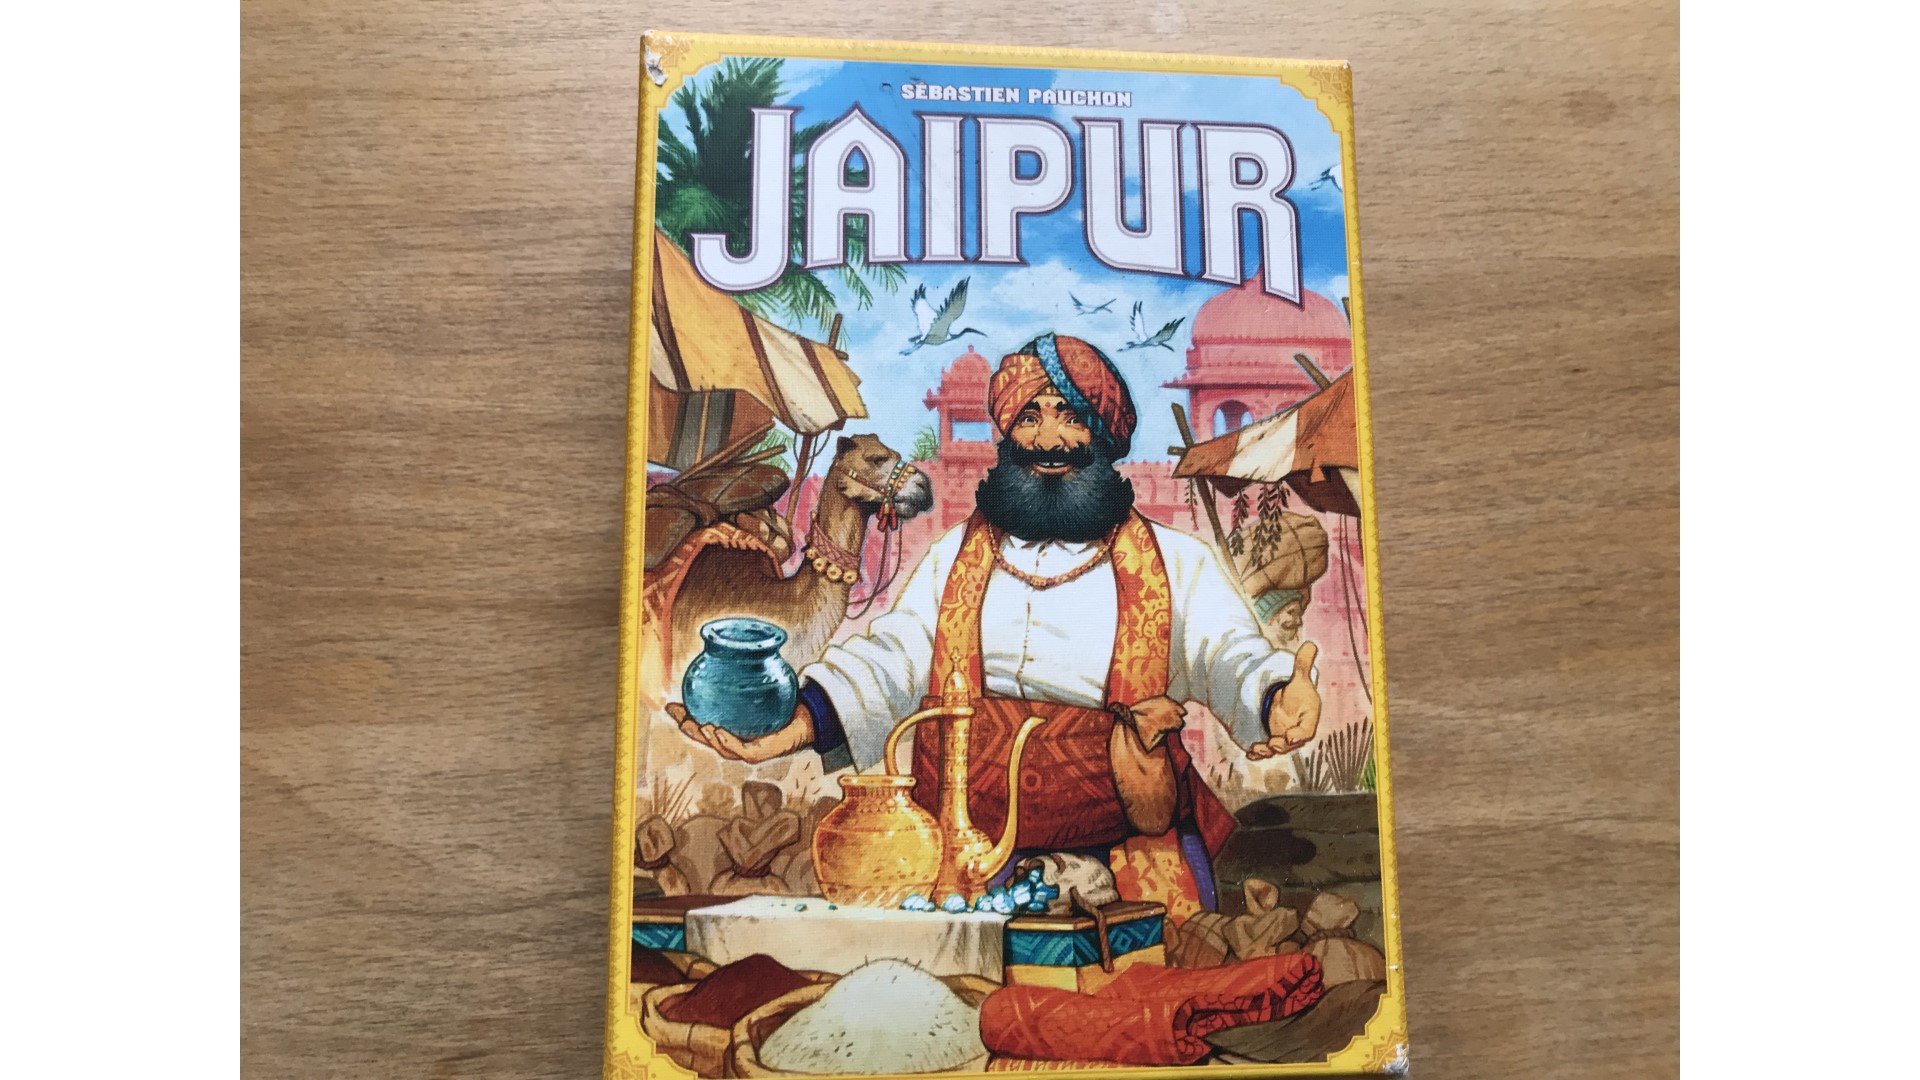 Jaipur board game - the Jaipur game box